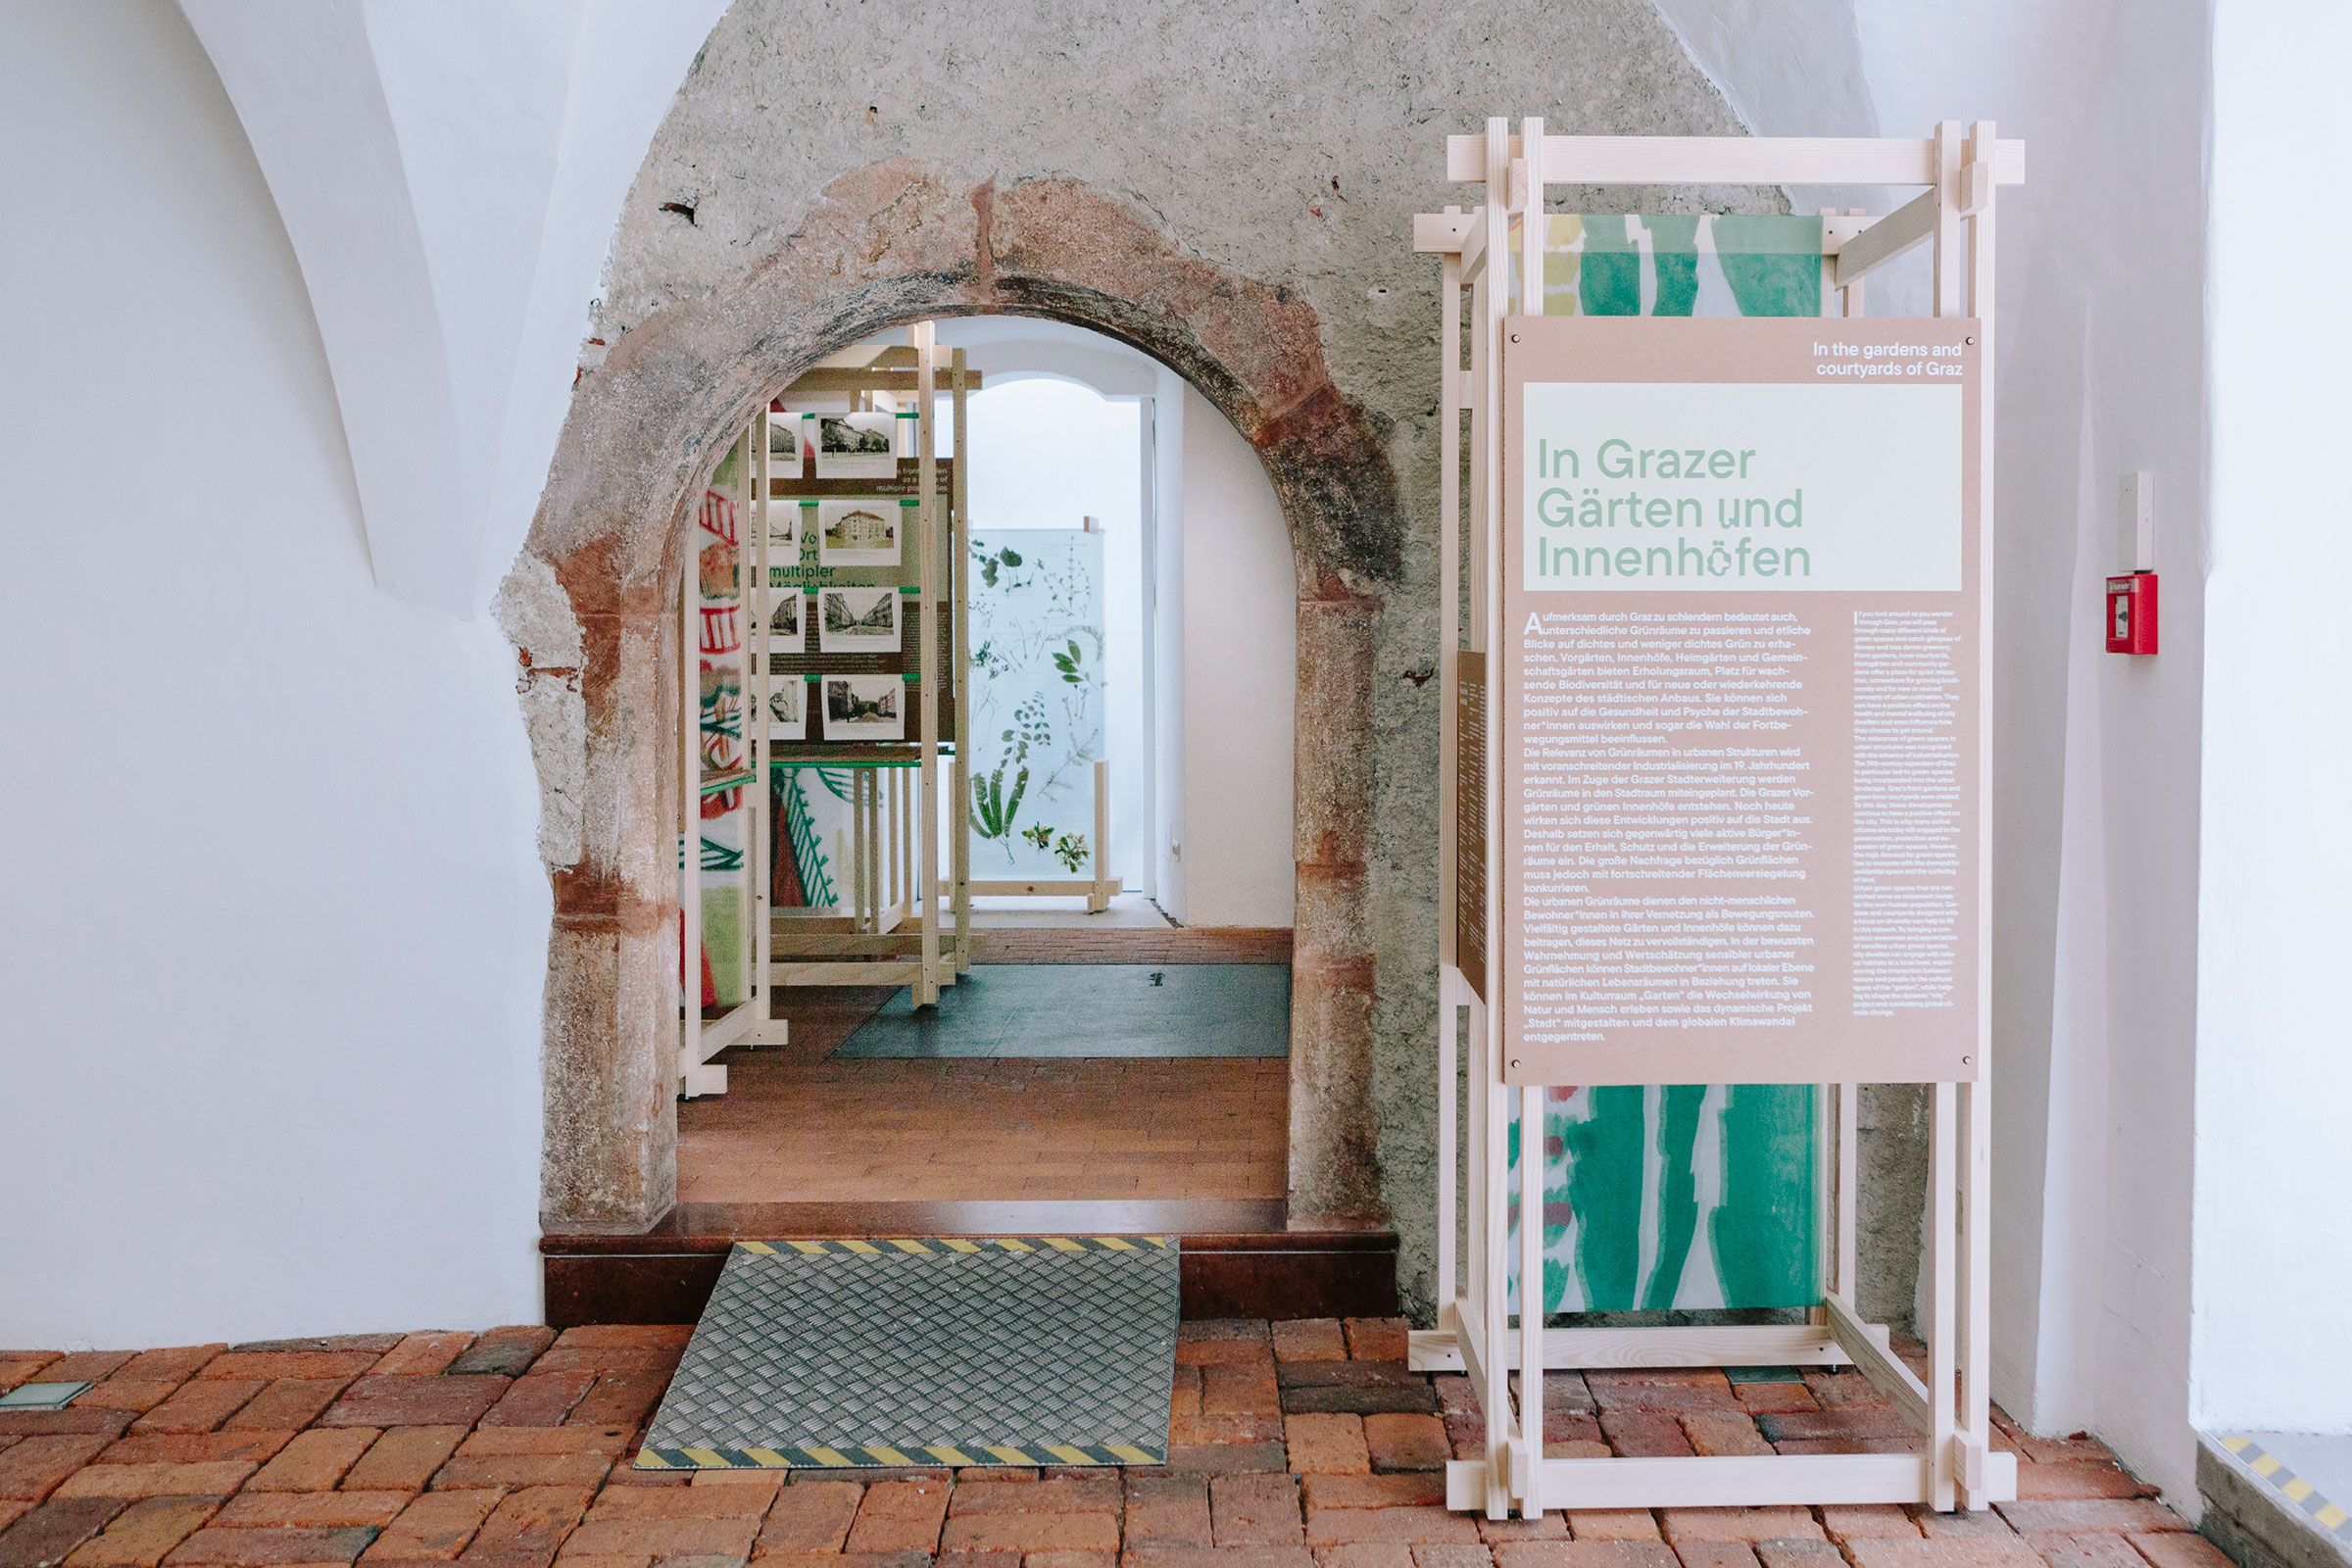 In der Gotischen Halle im Graz Museum gibt die Ausstellung "In Grazer Gärten und Innenhöfen" einen Überblick über die Entwicklung urbaner Grünräume.